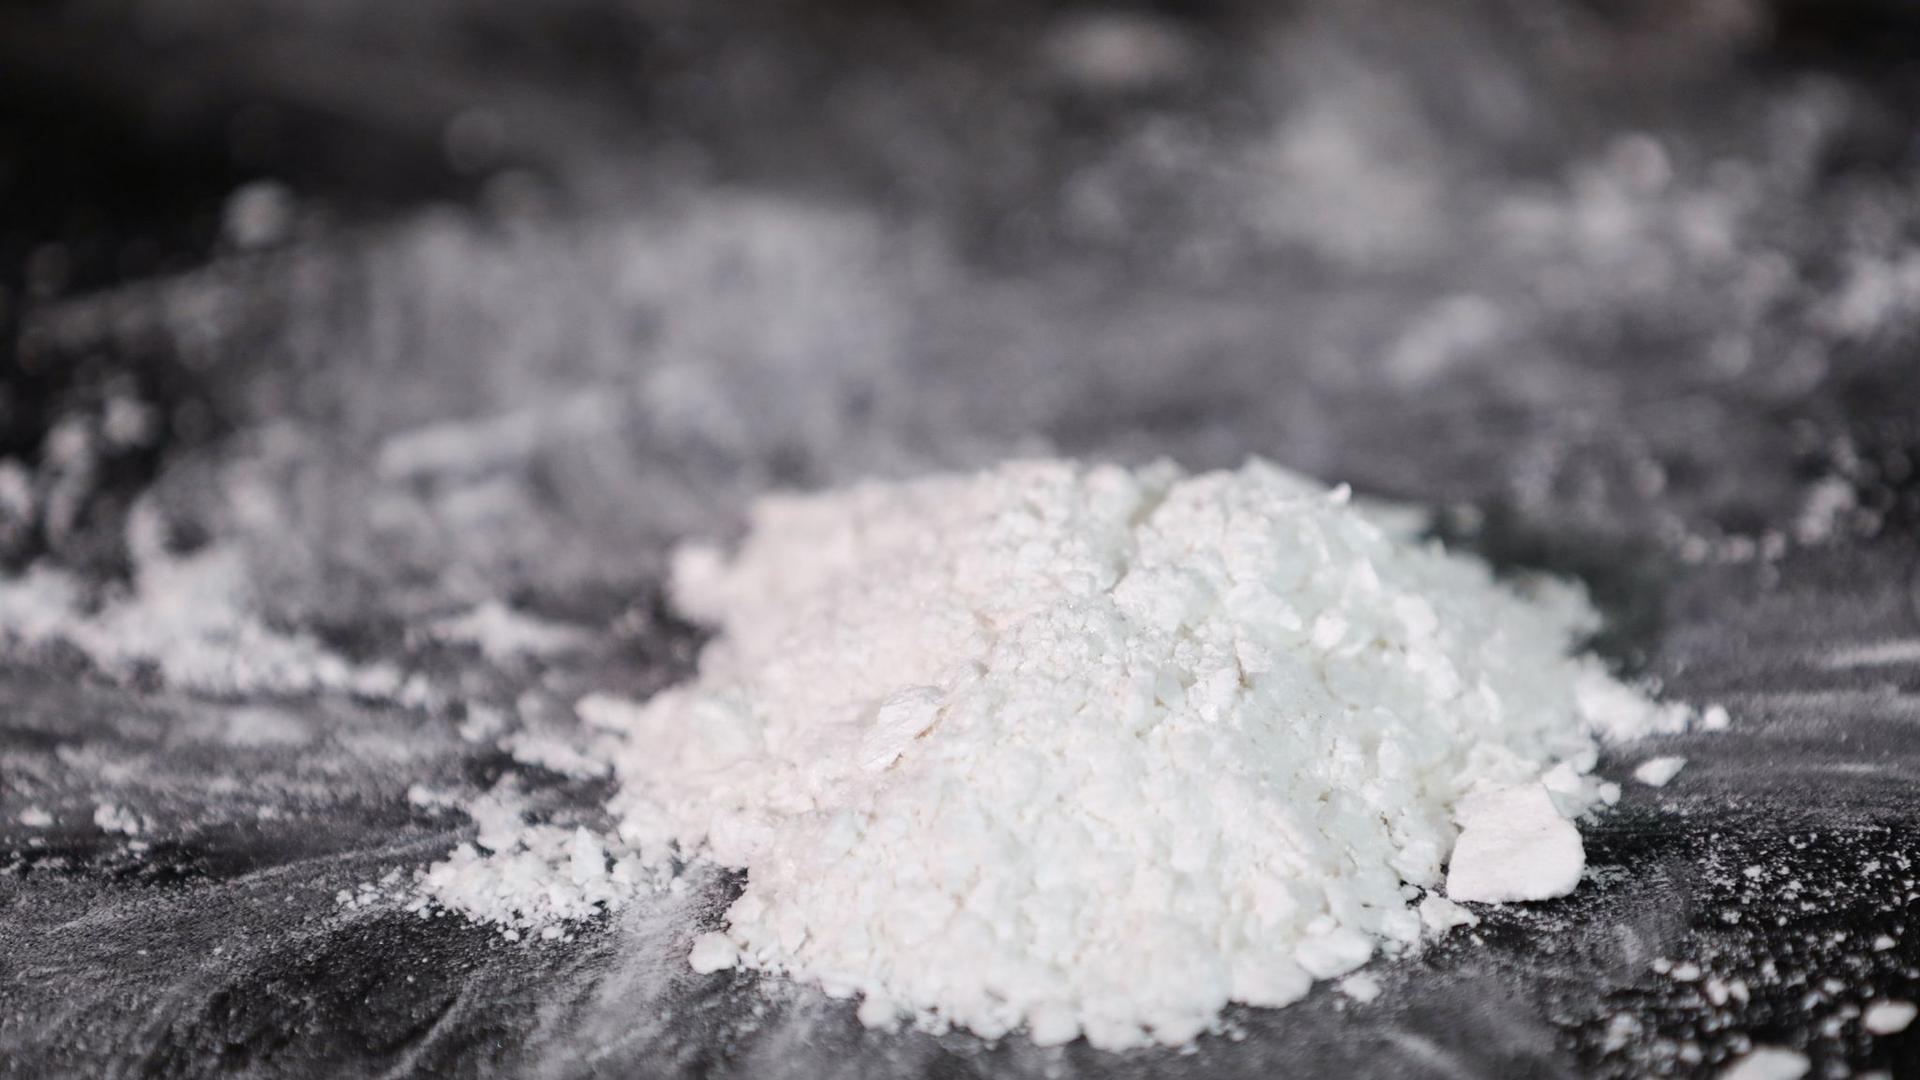 Die Polizei präsentiert einen Kokainfund. Das Bundeskriminalamt fürchtet einen wachsenden Einfluss mexikanischer Drogenkartelle in Europa.